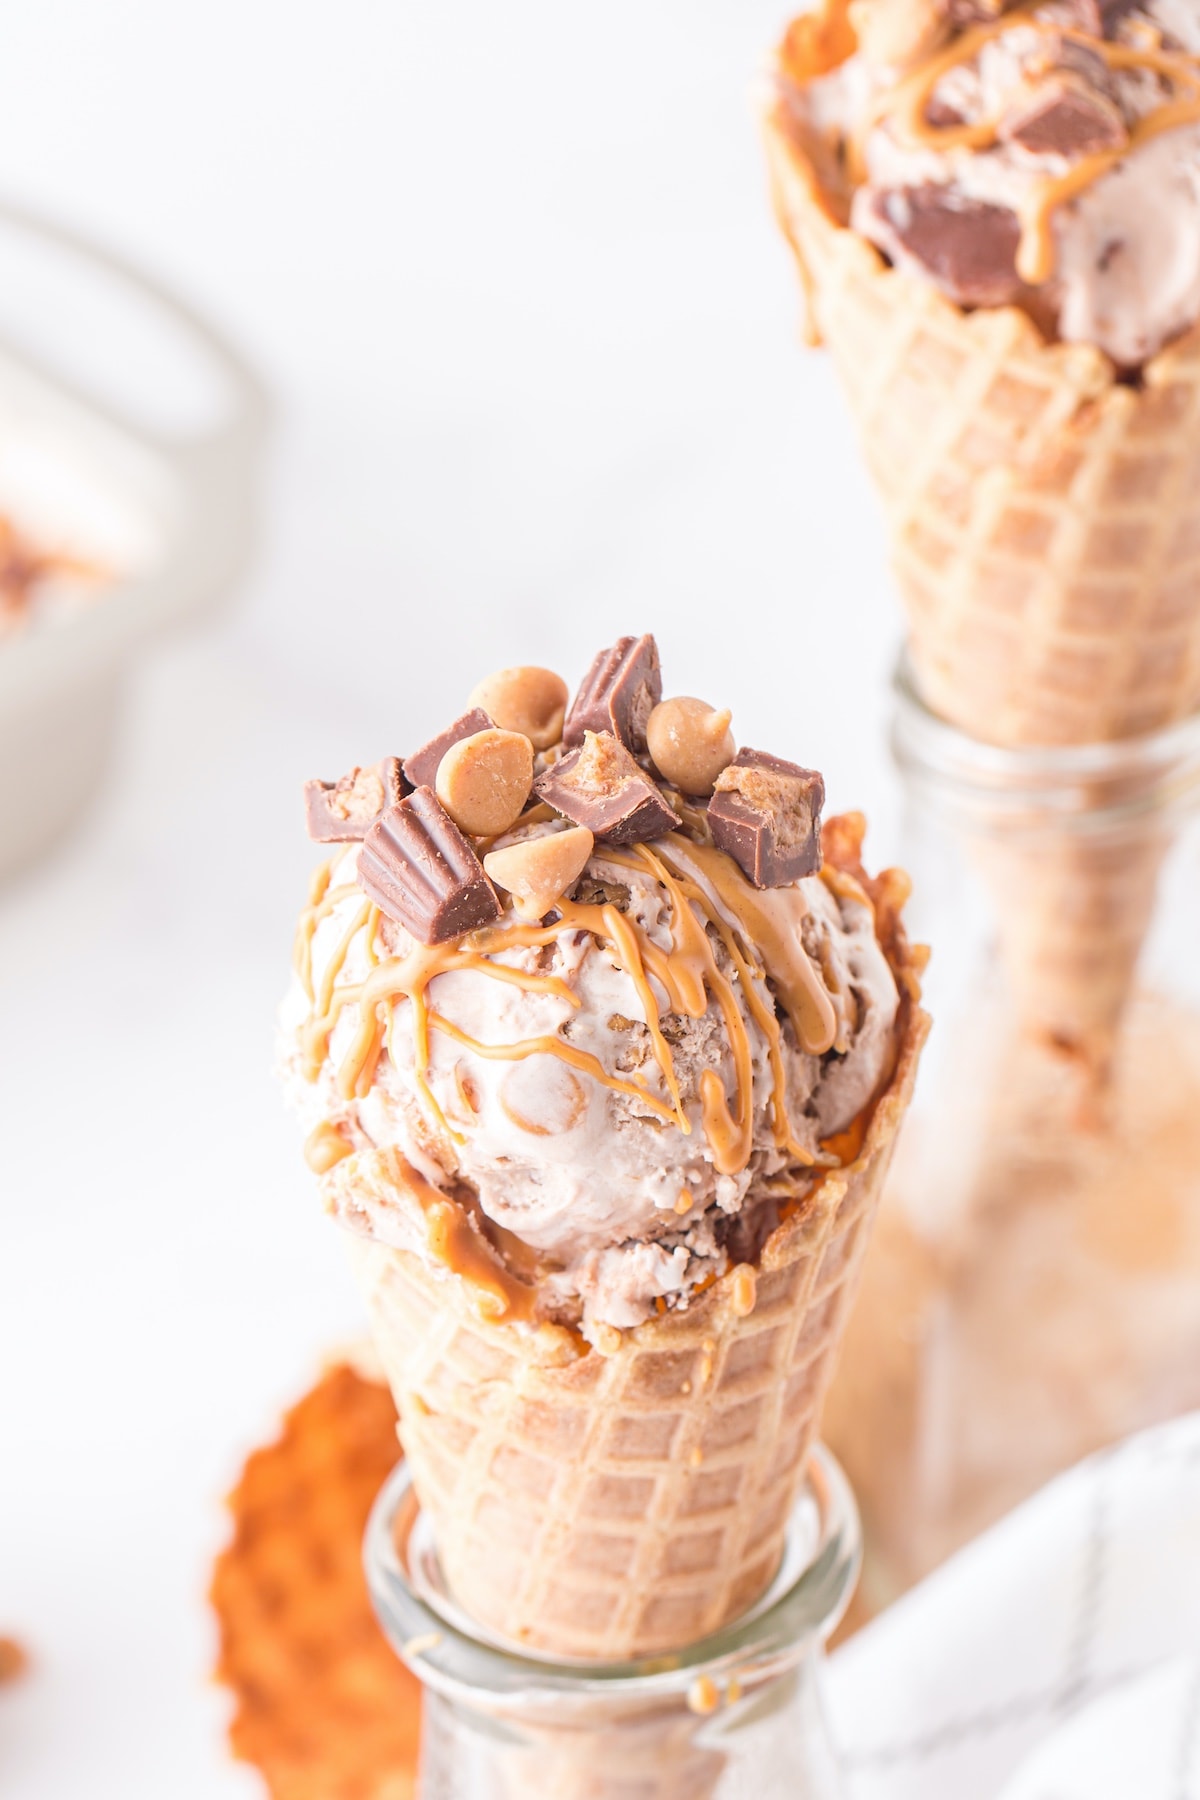 peanut butter ice cream in a cone